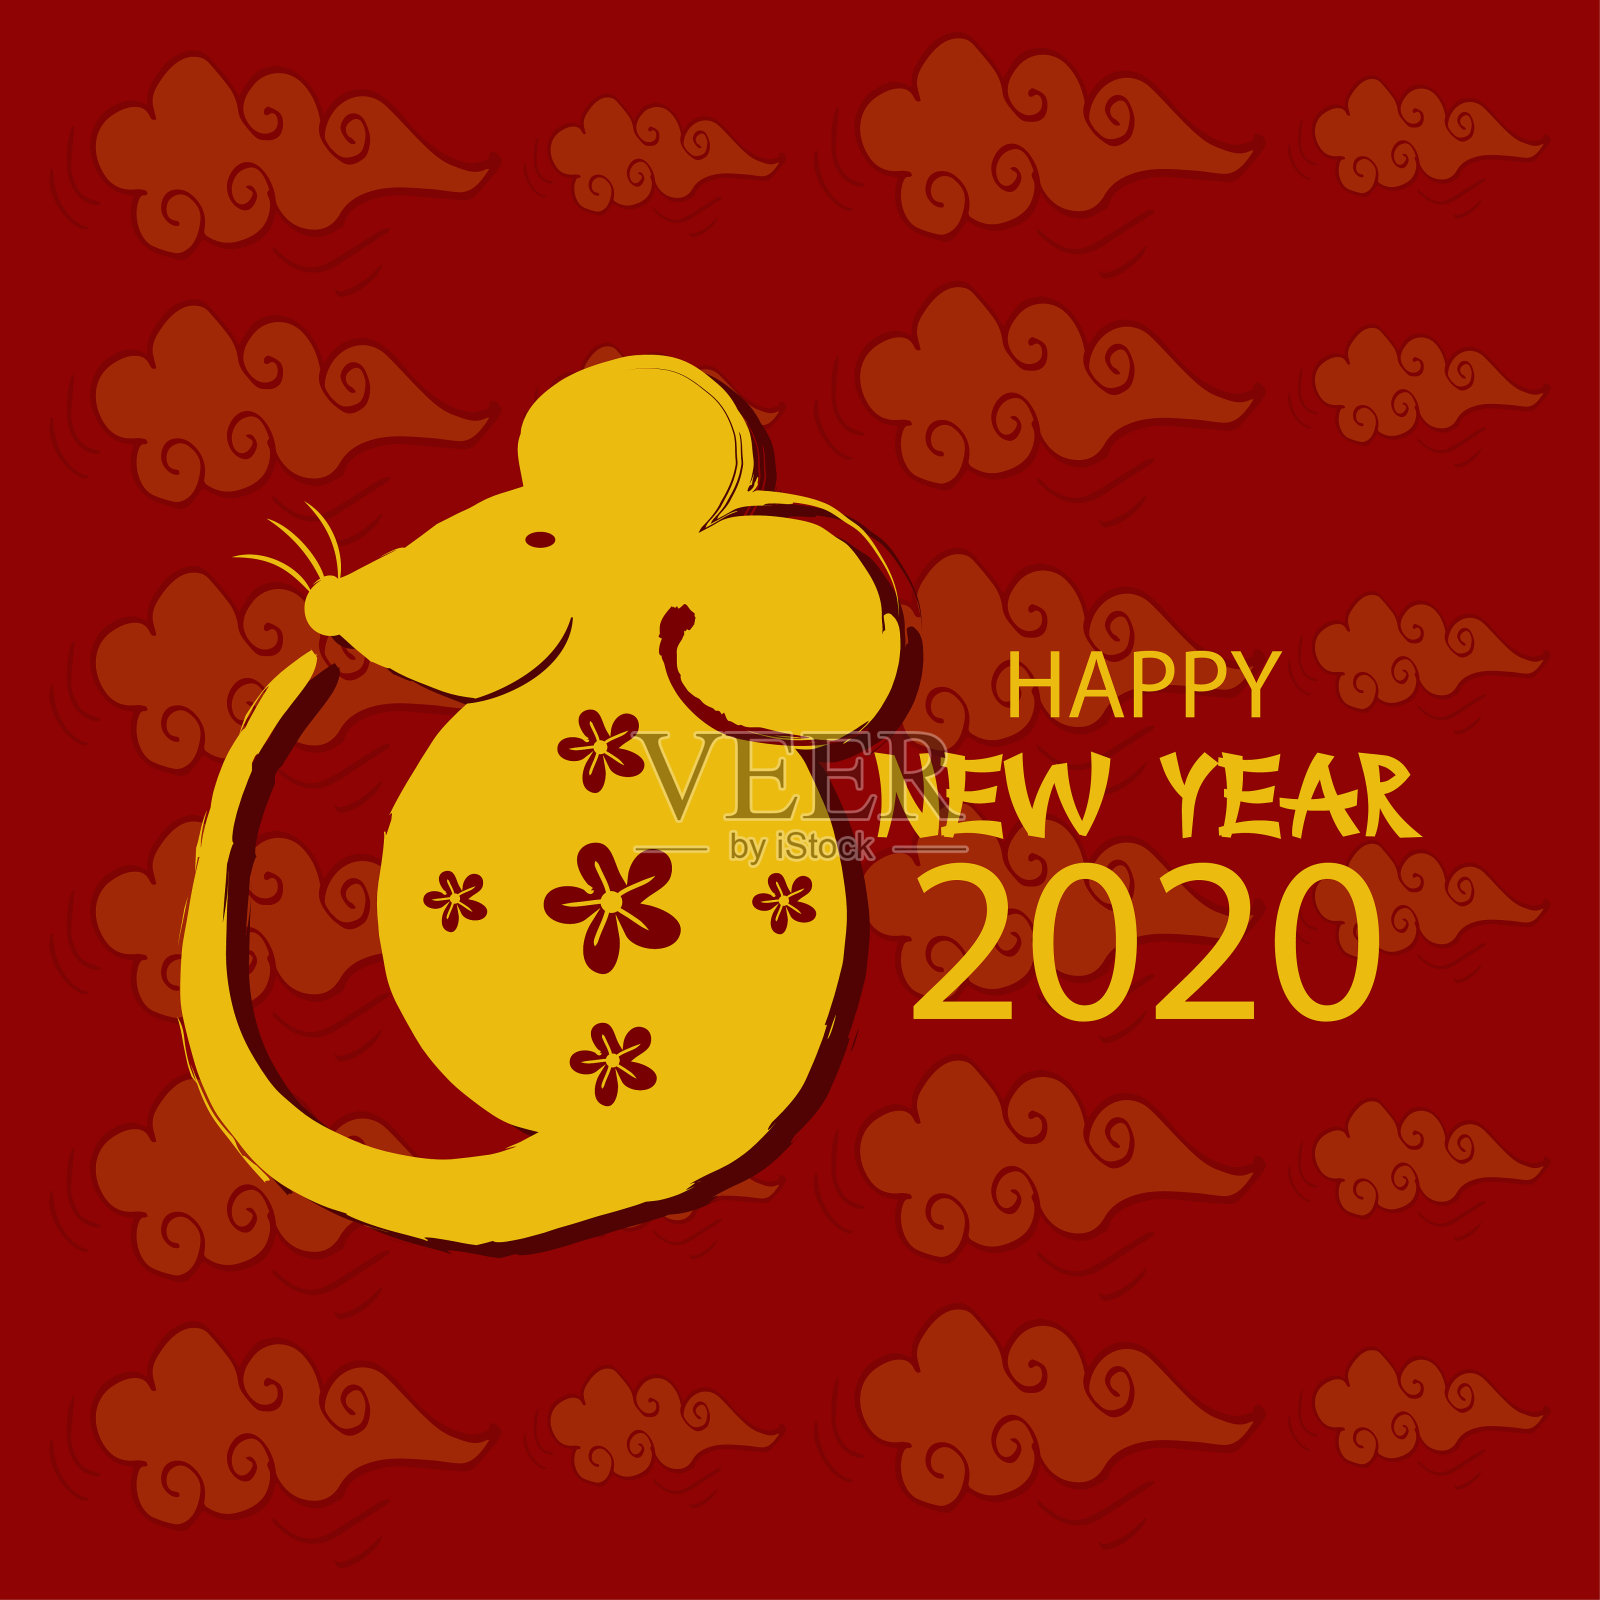 鼠人2020年新年快乐。设计模板素材